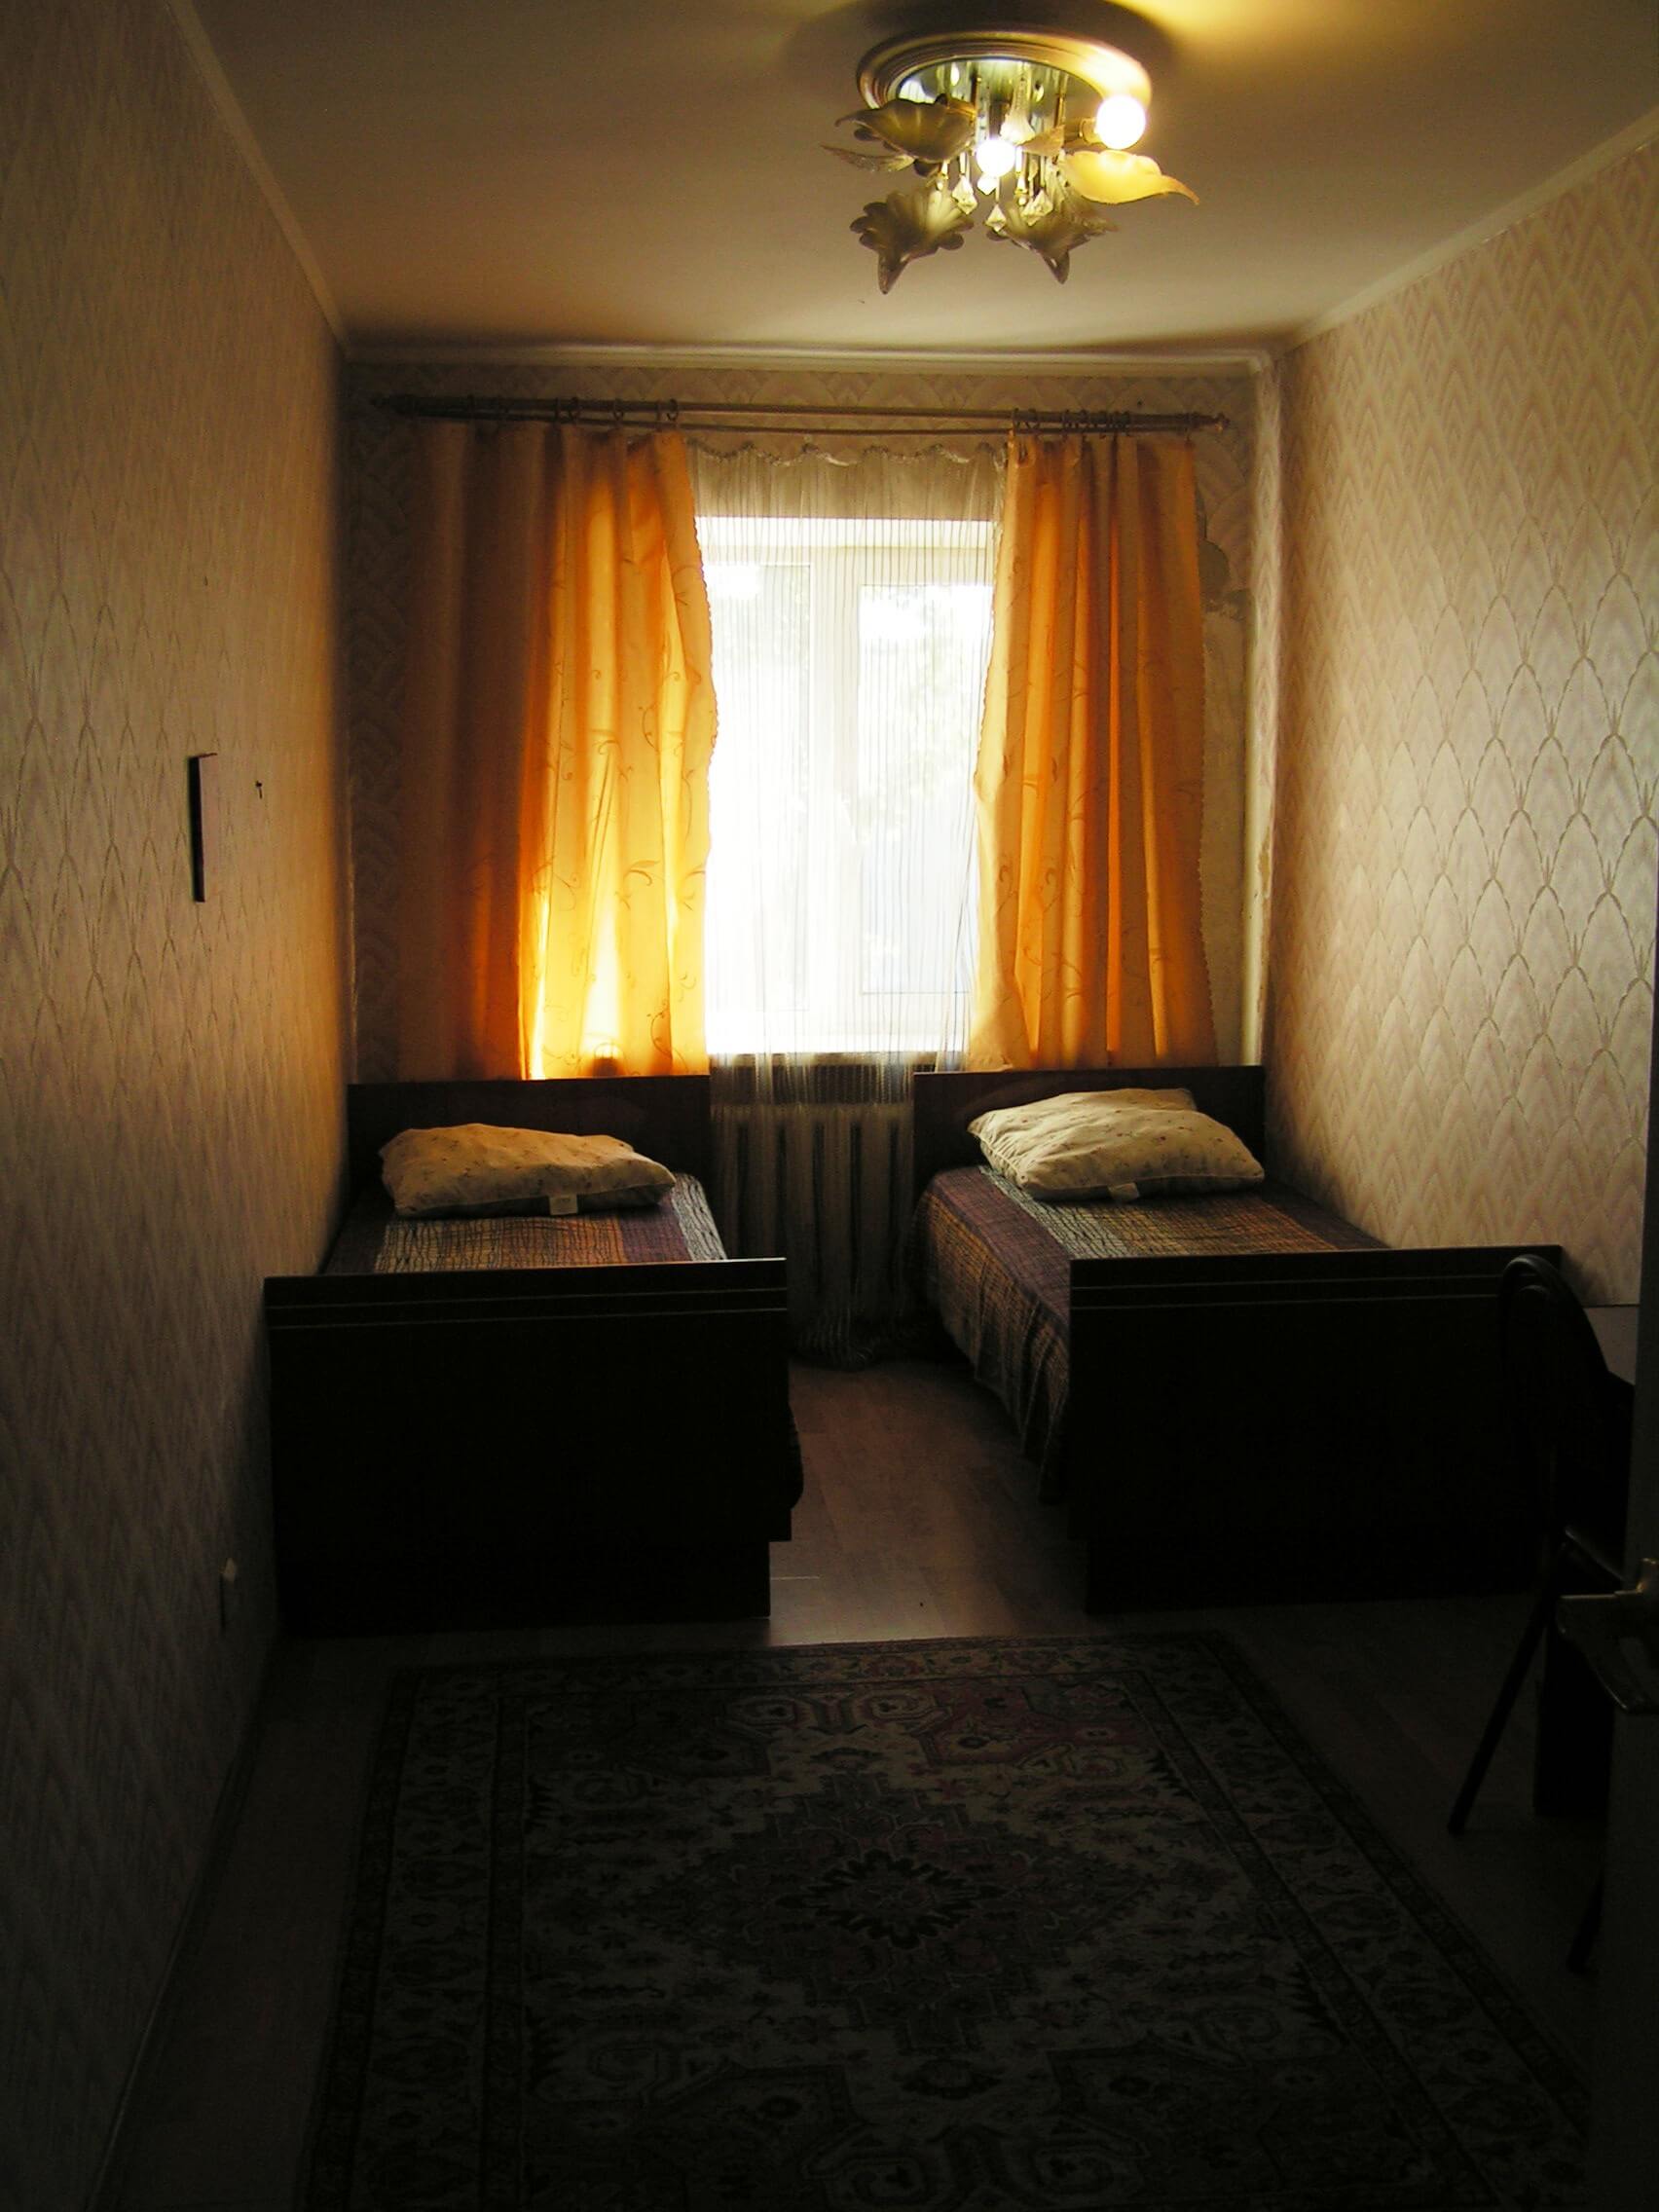 Трехкомнатная квартира на ул. Н. Островского, д. 19в (62кв.м)